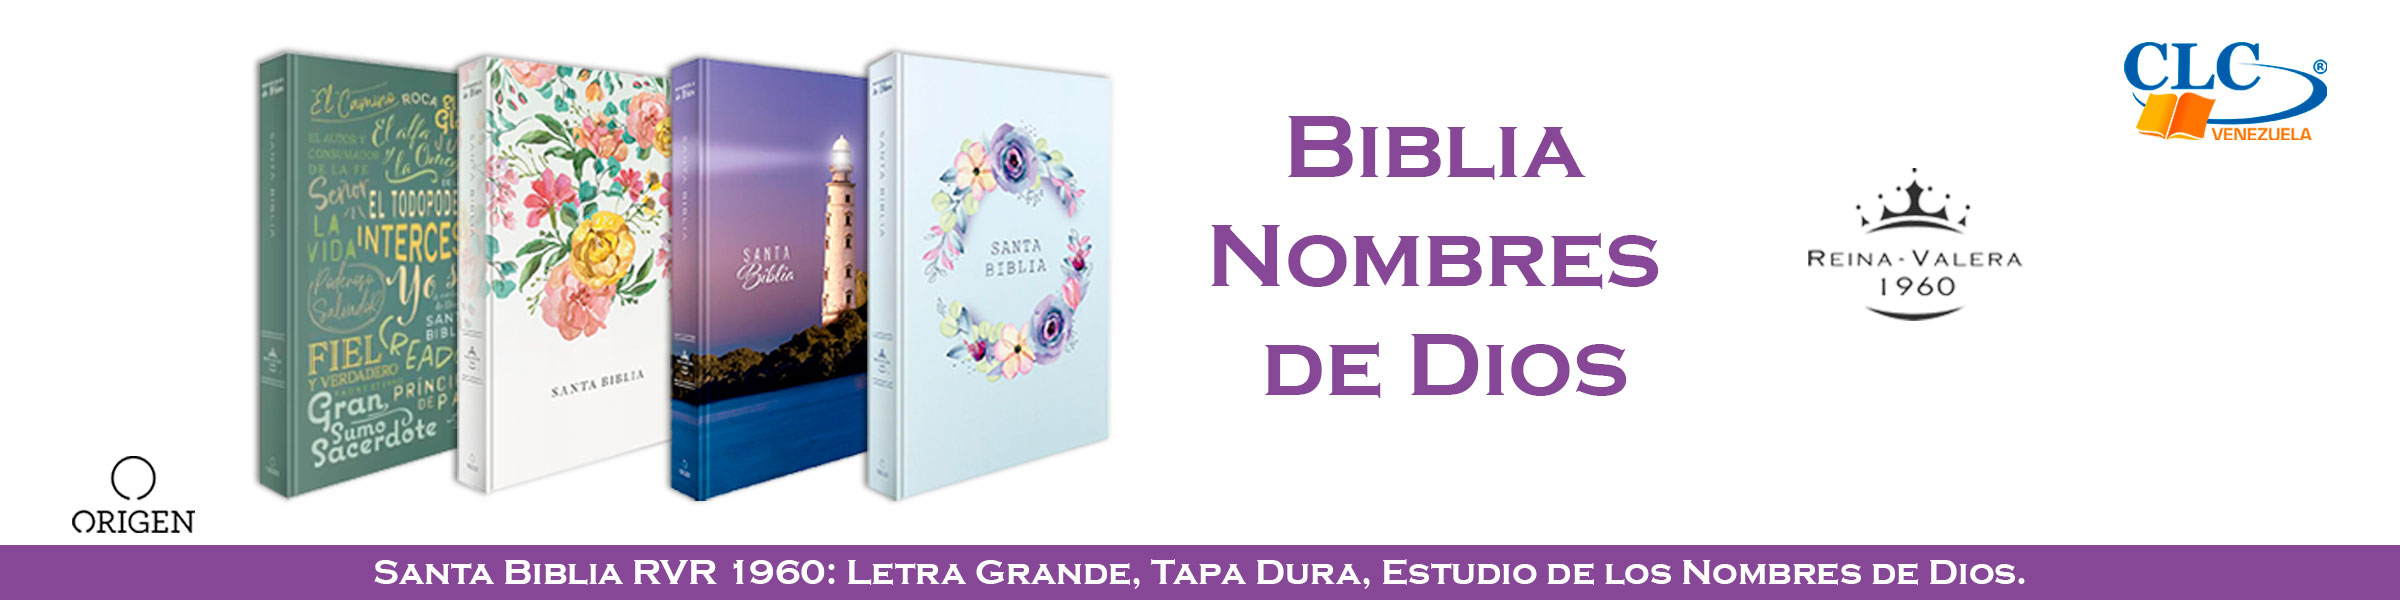 4.Santa-Biblia-Nombres-de-Dios-Morado-WEB